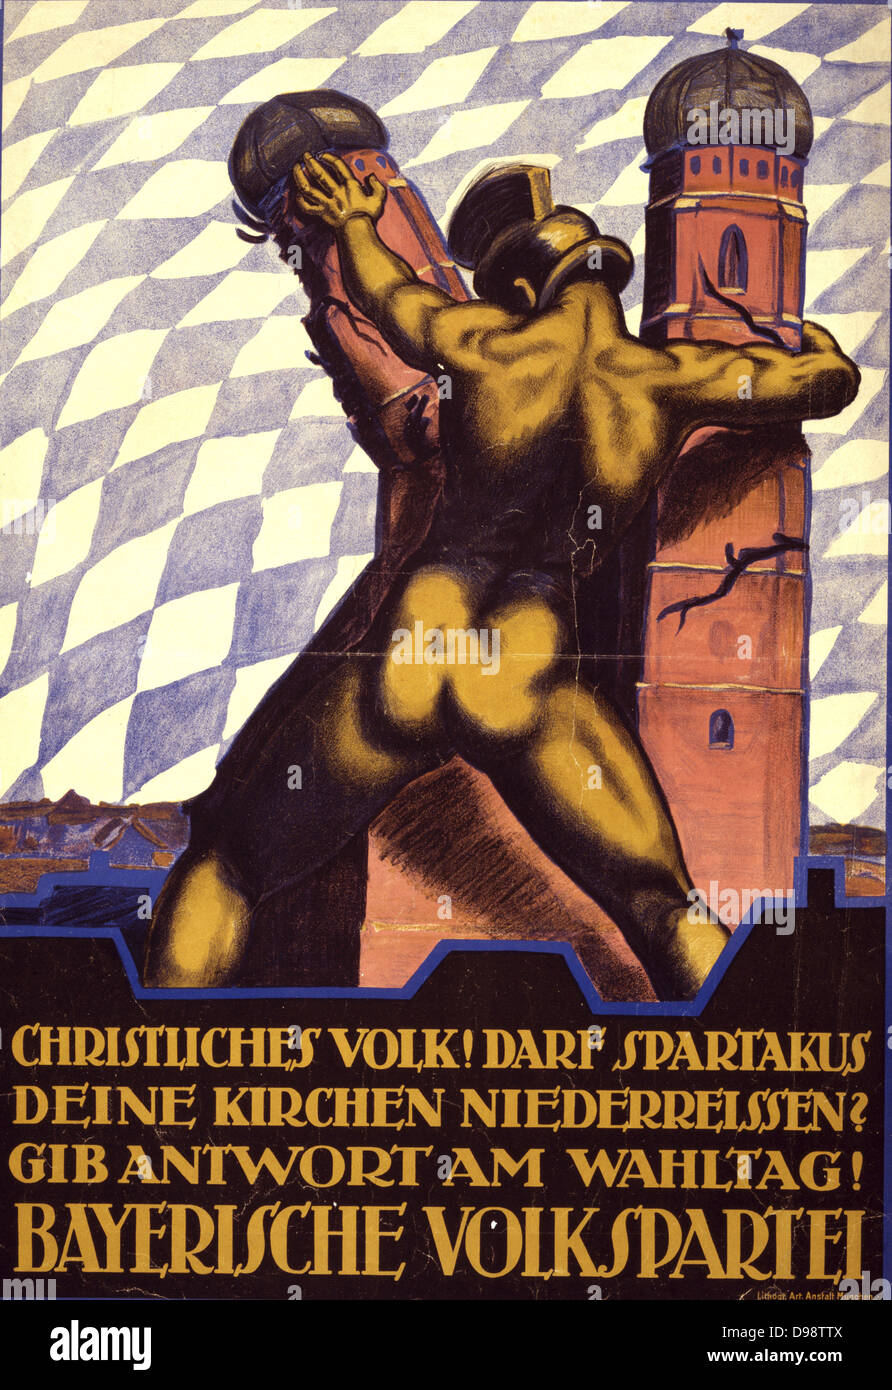 L'affiche de la politique allemande, 1919 : figure dans le démontage du casque Munich Frauenkirche. Texte : peuple chrétien ! Permettez-vous de Spartakus à démonter votre églises ? Réponse le jour des élections ! Le Parti du peuple bavarois. Anti-Communist Banque D'Images